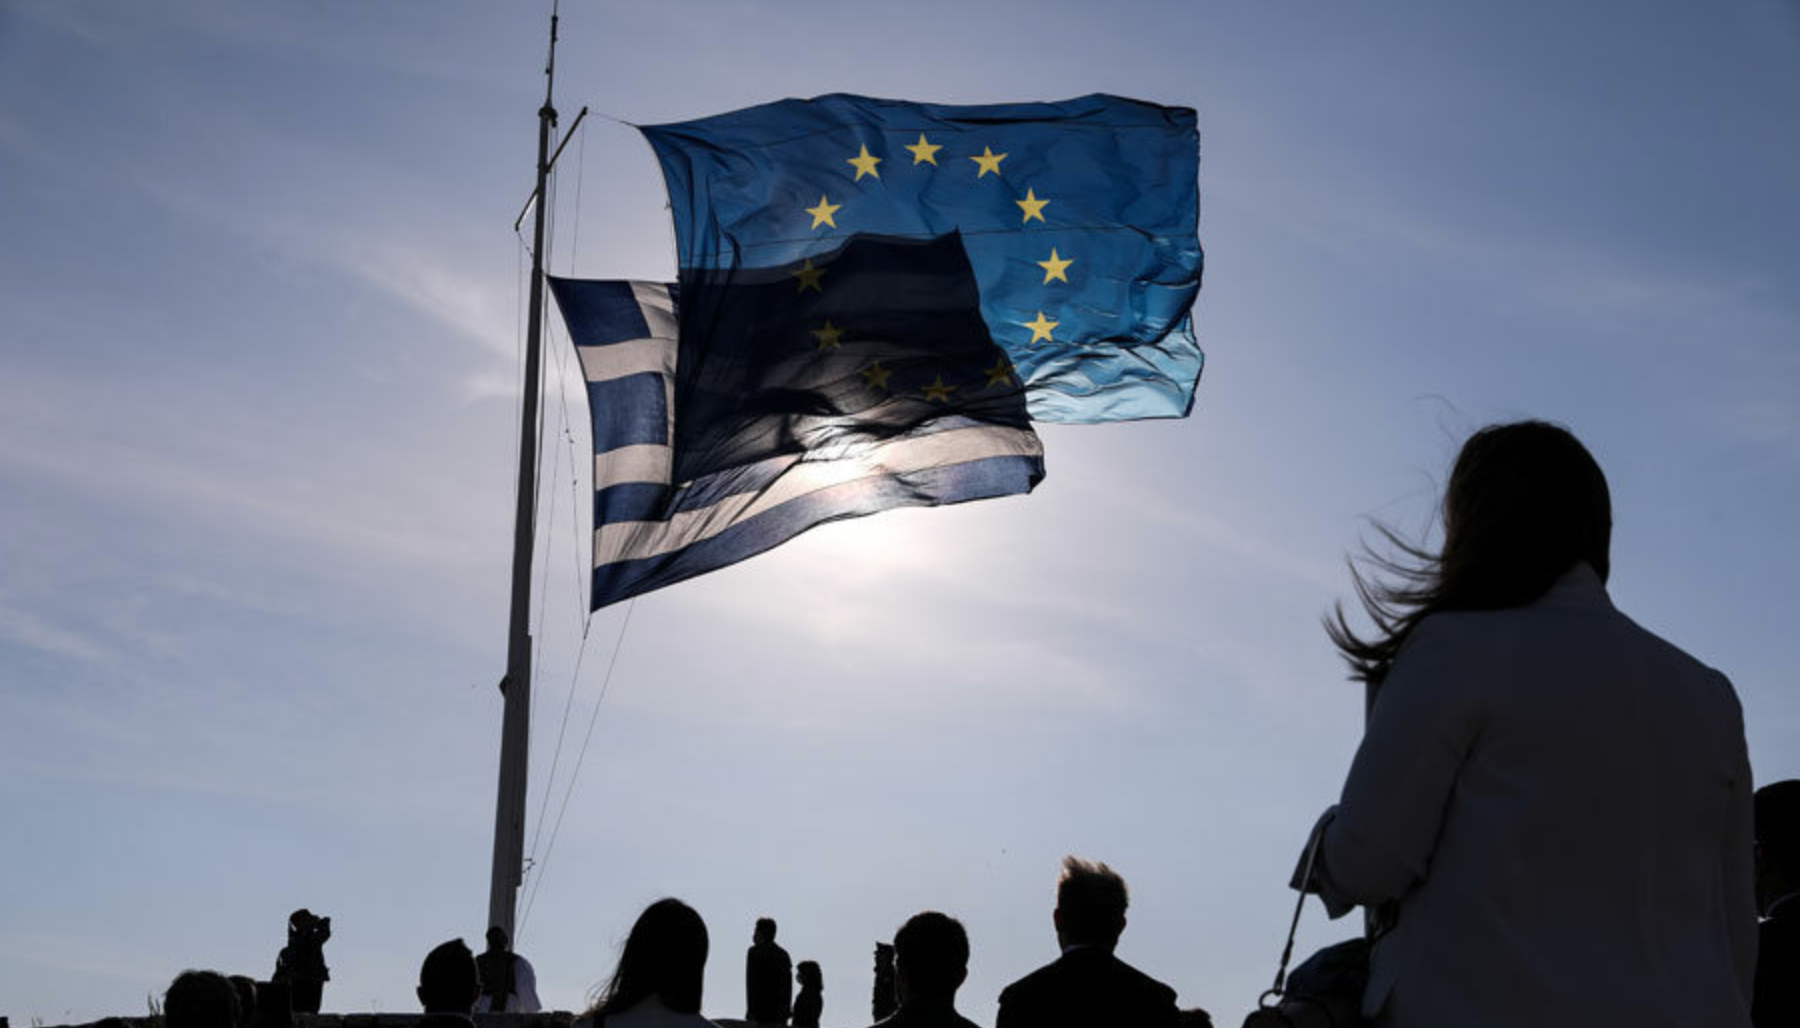 Μπορεί η ελληνική οικονομία να είναι λειτουργική για όλους;